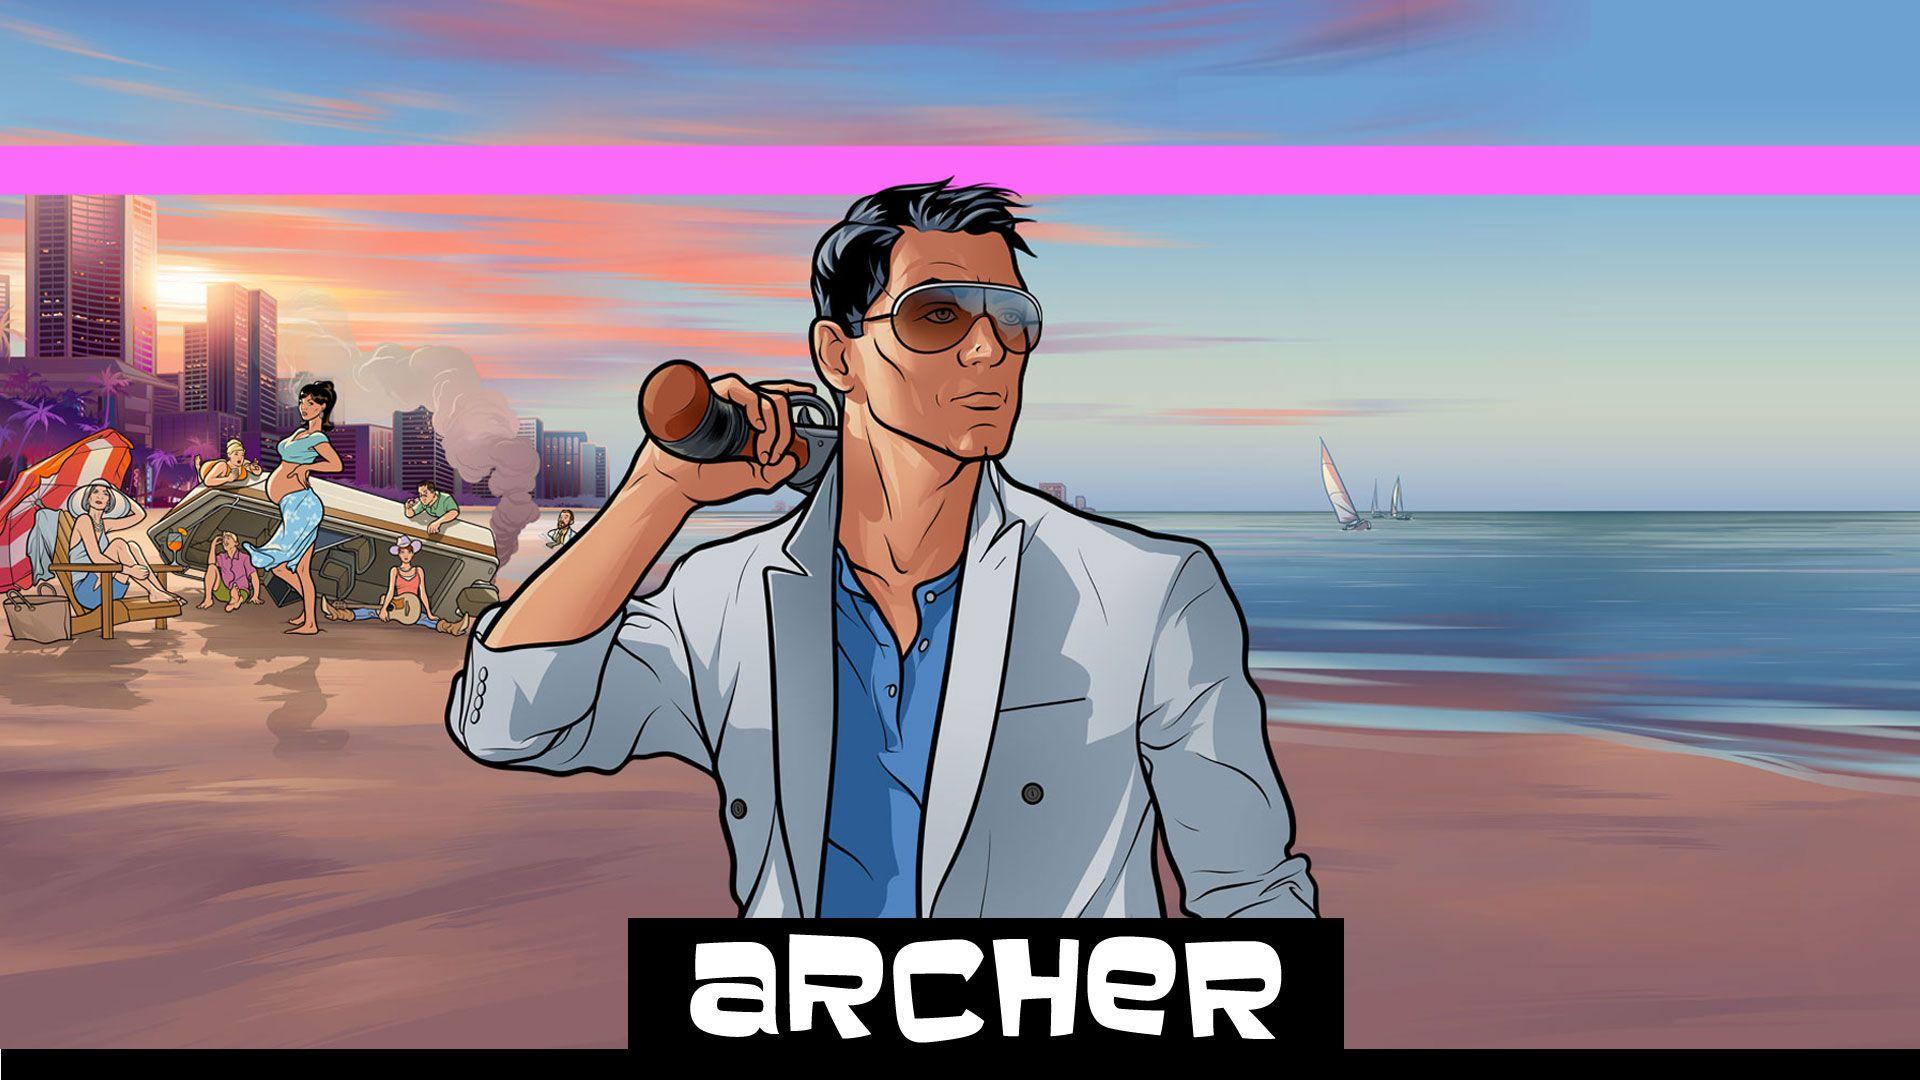 Rejoice: Archer Wallpaper are here